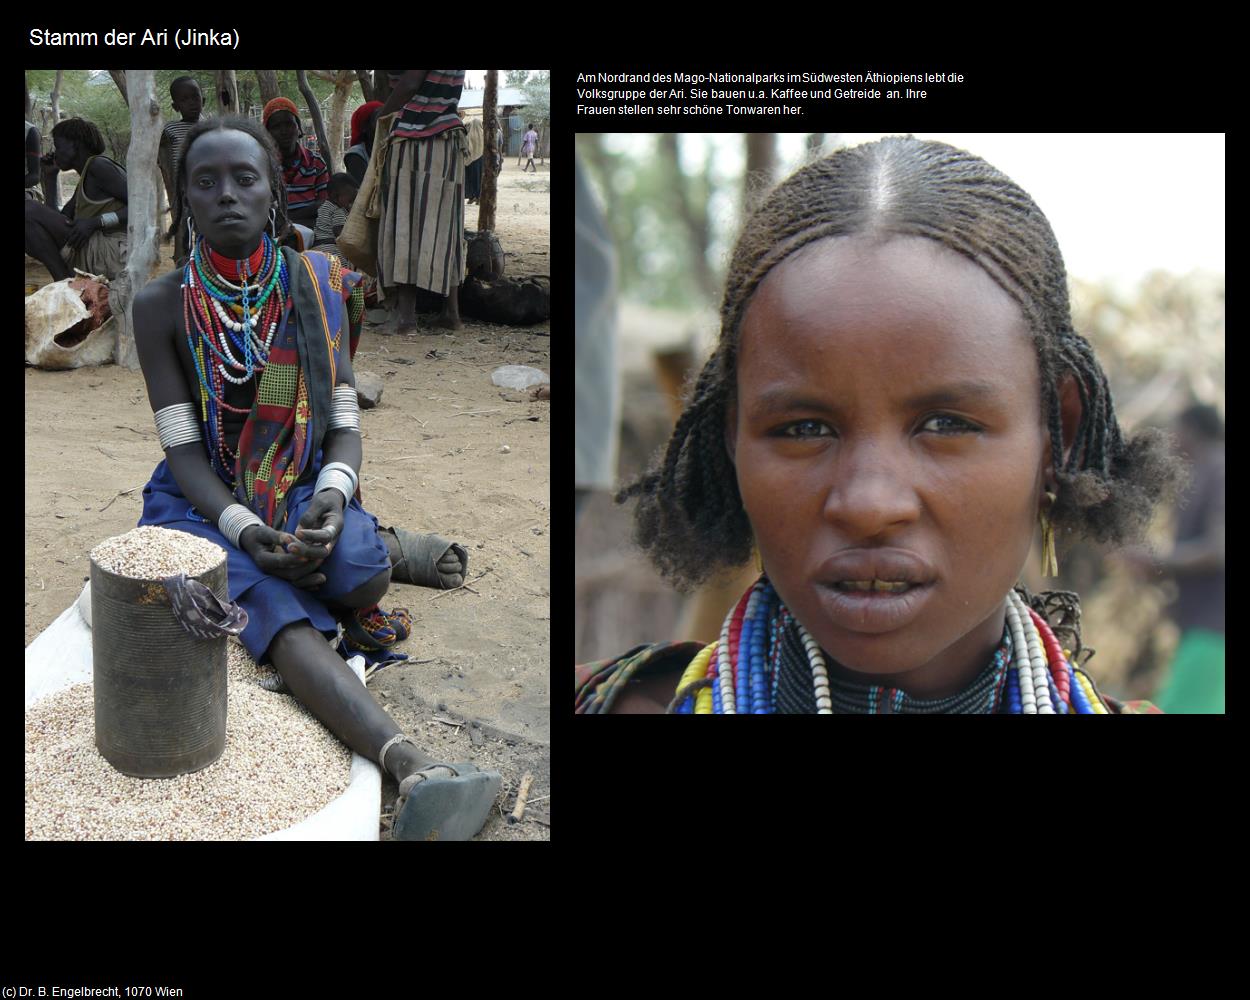 Stamm der Ari (Jinka) in Äthiopien